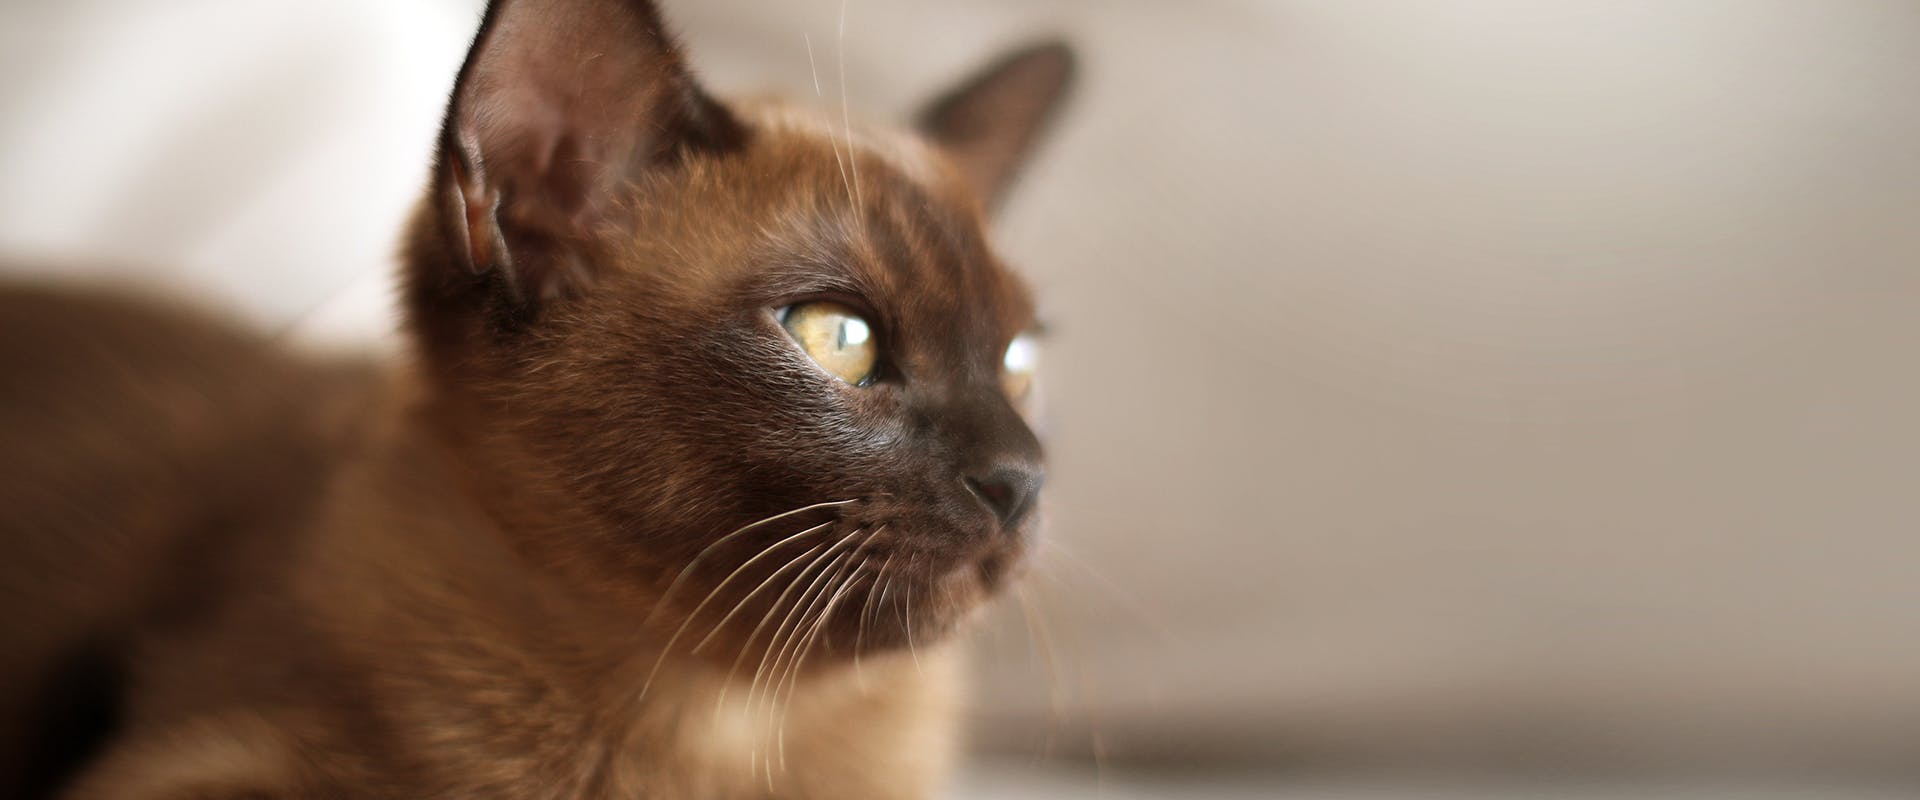 Rare cat breeds - a Burmese cat